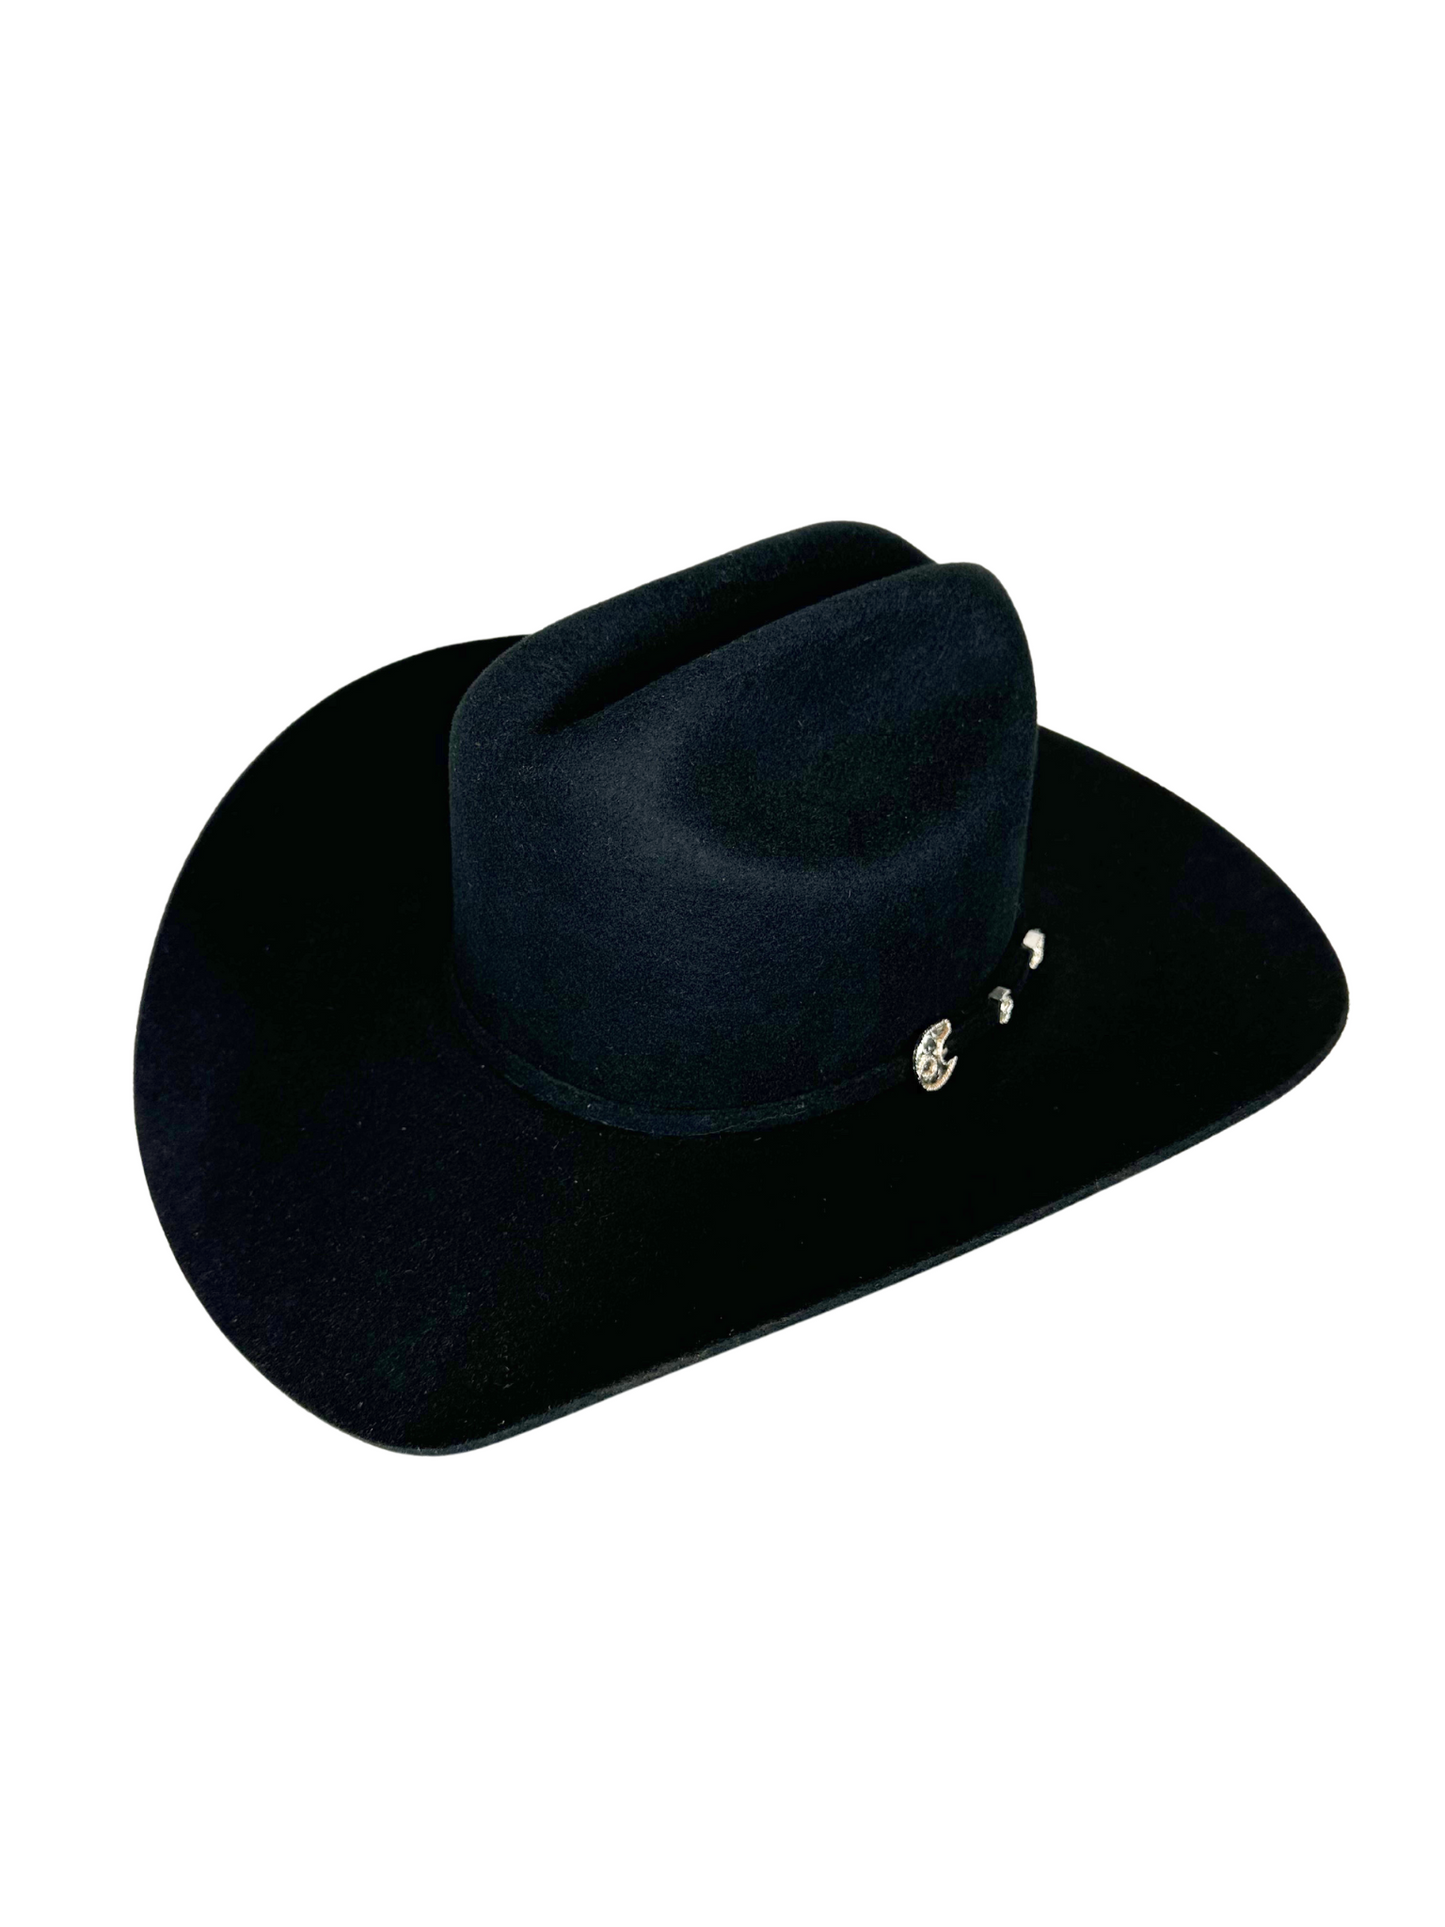 Stetson Corral 4X Cowboy Hat - Black